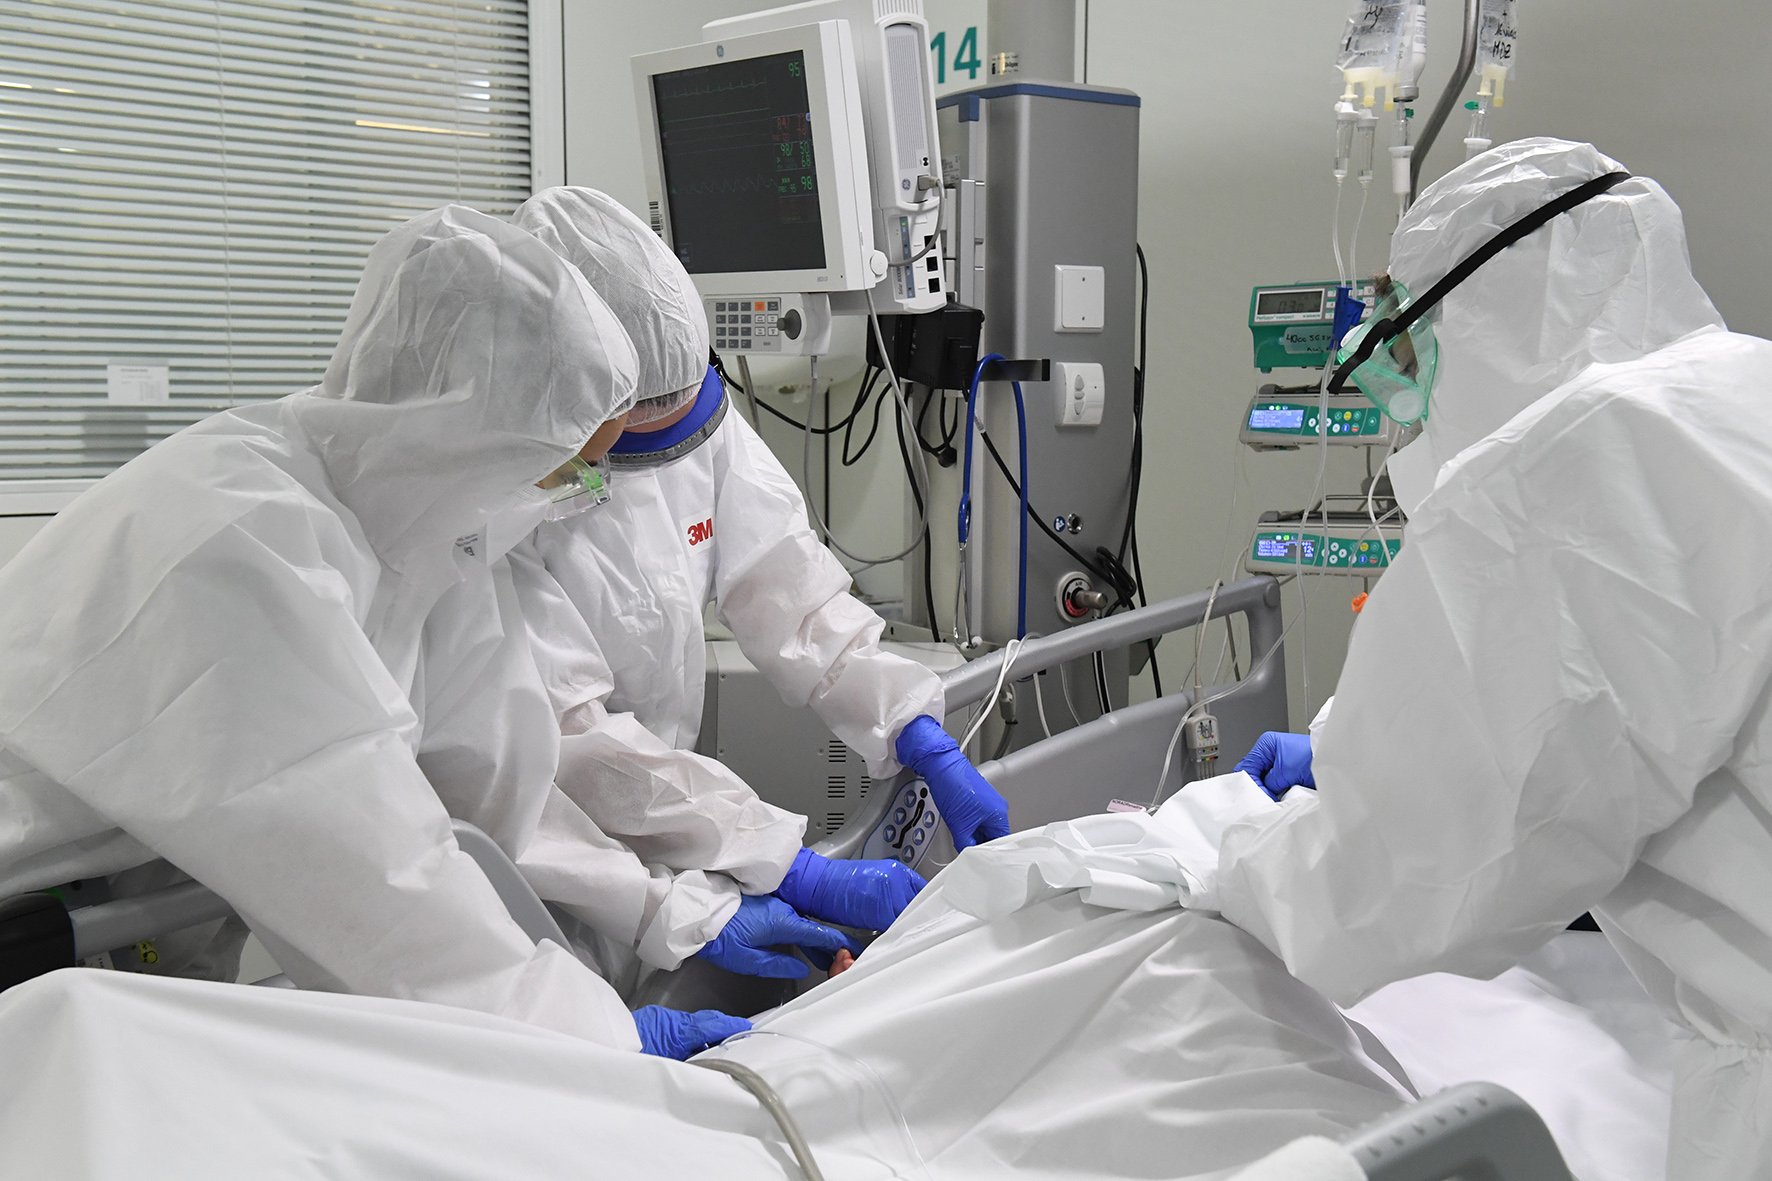 Impotència, agafar la mà i compartir pors: la Covid-19 vista per infermeres